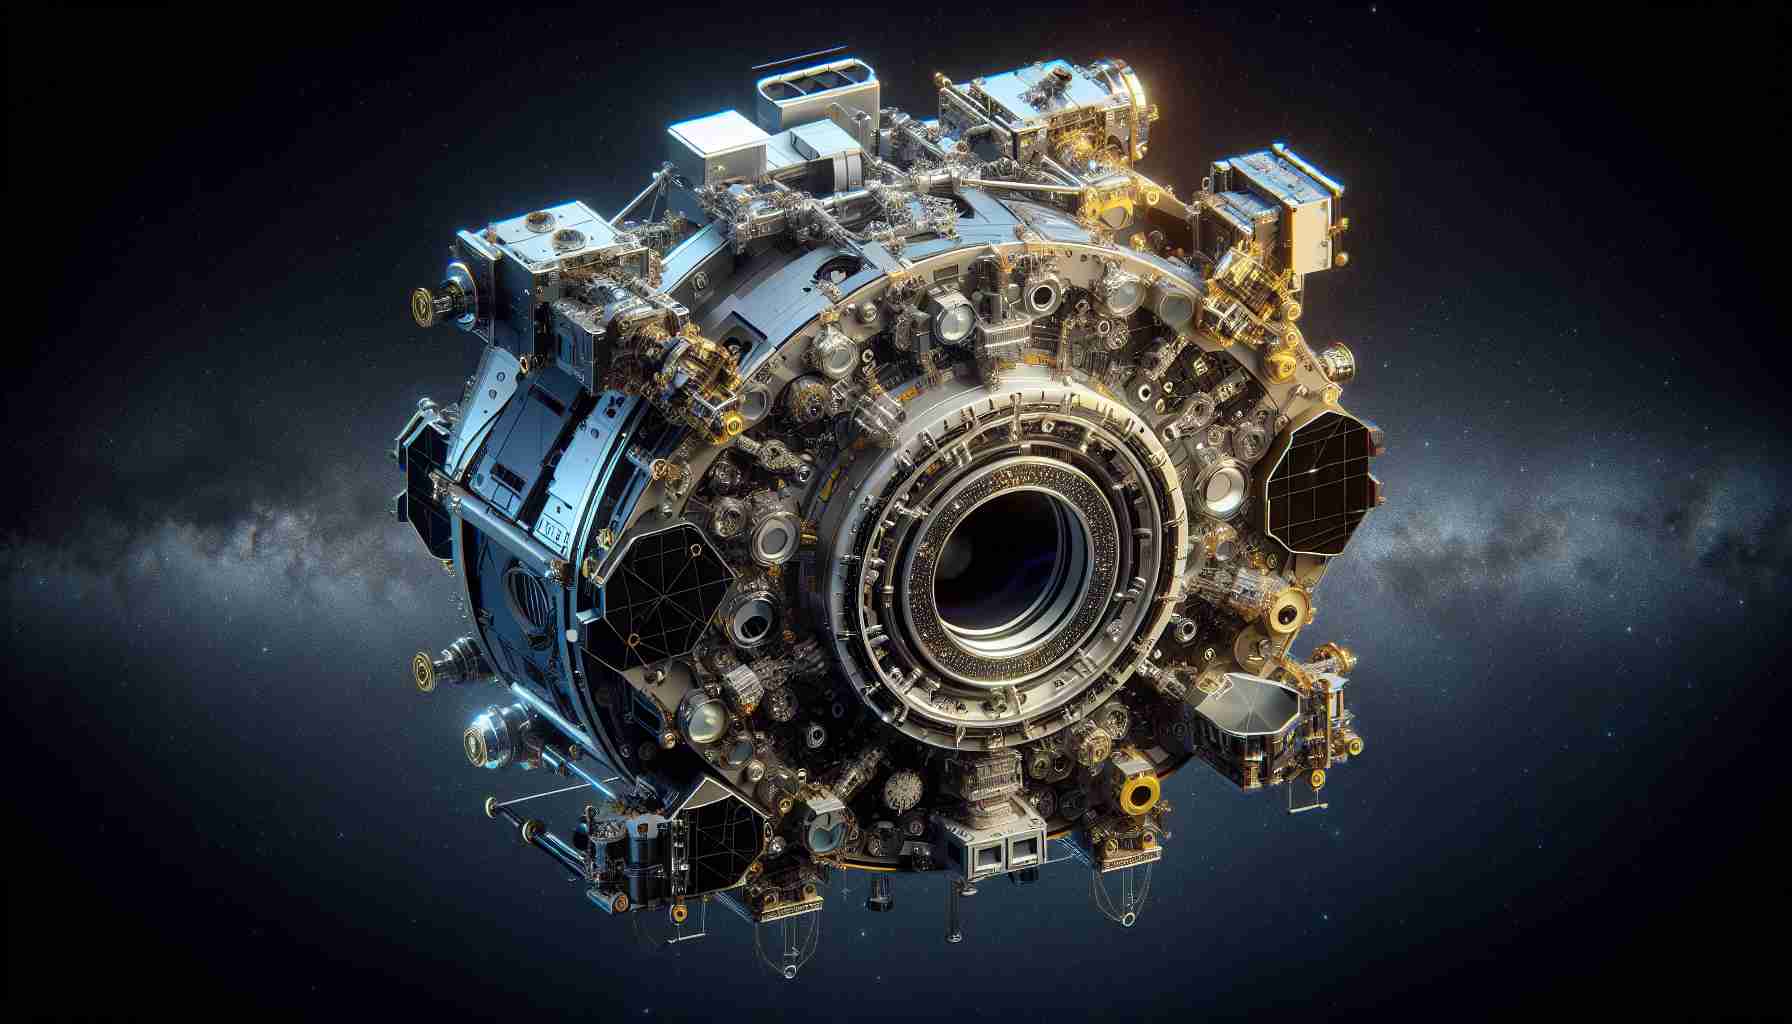 QUEST SPECTRUM® Light Engine Components